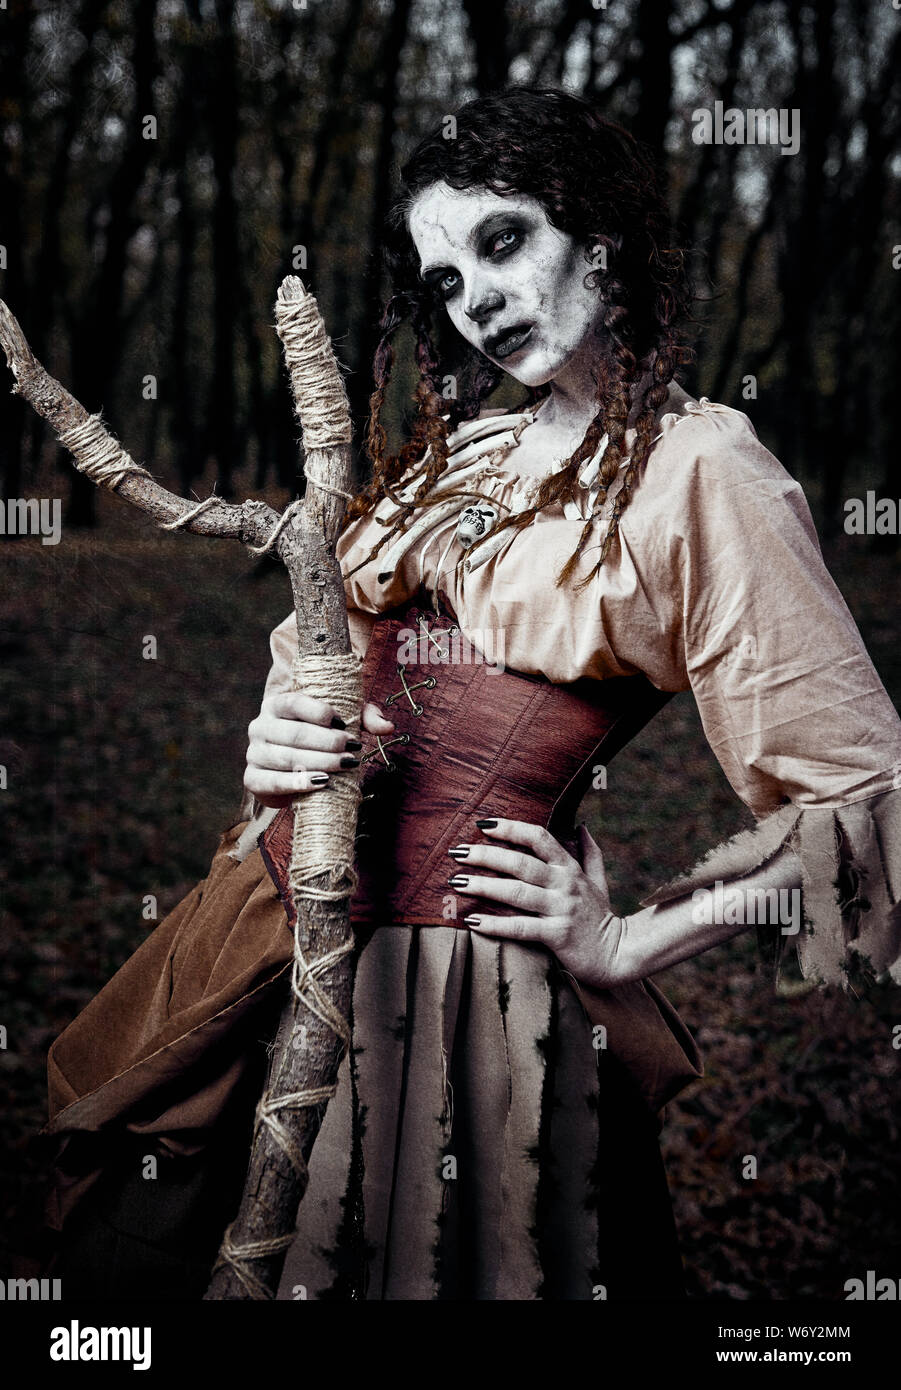 Tema Halloween: cupo creepy strega voodoo con bastone. Ritratto del perfido Hex nella foresta scura. Zombie donna (undead). Grunge effetto texture Foto Stock